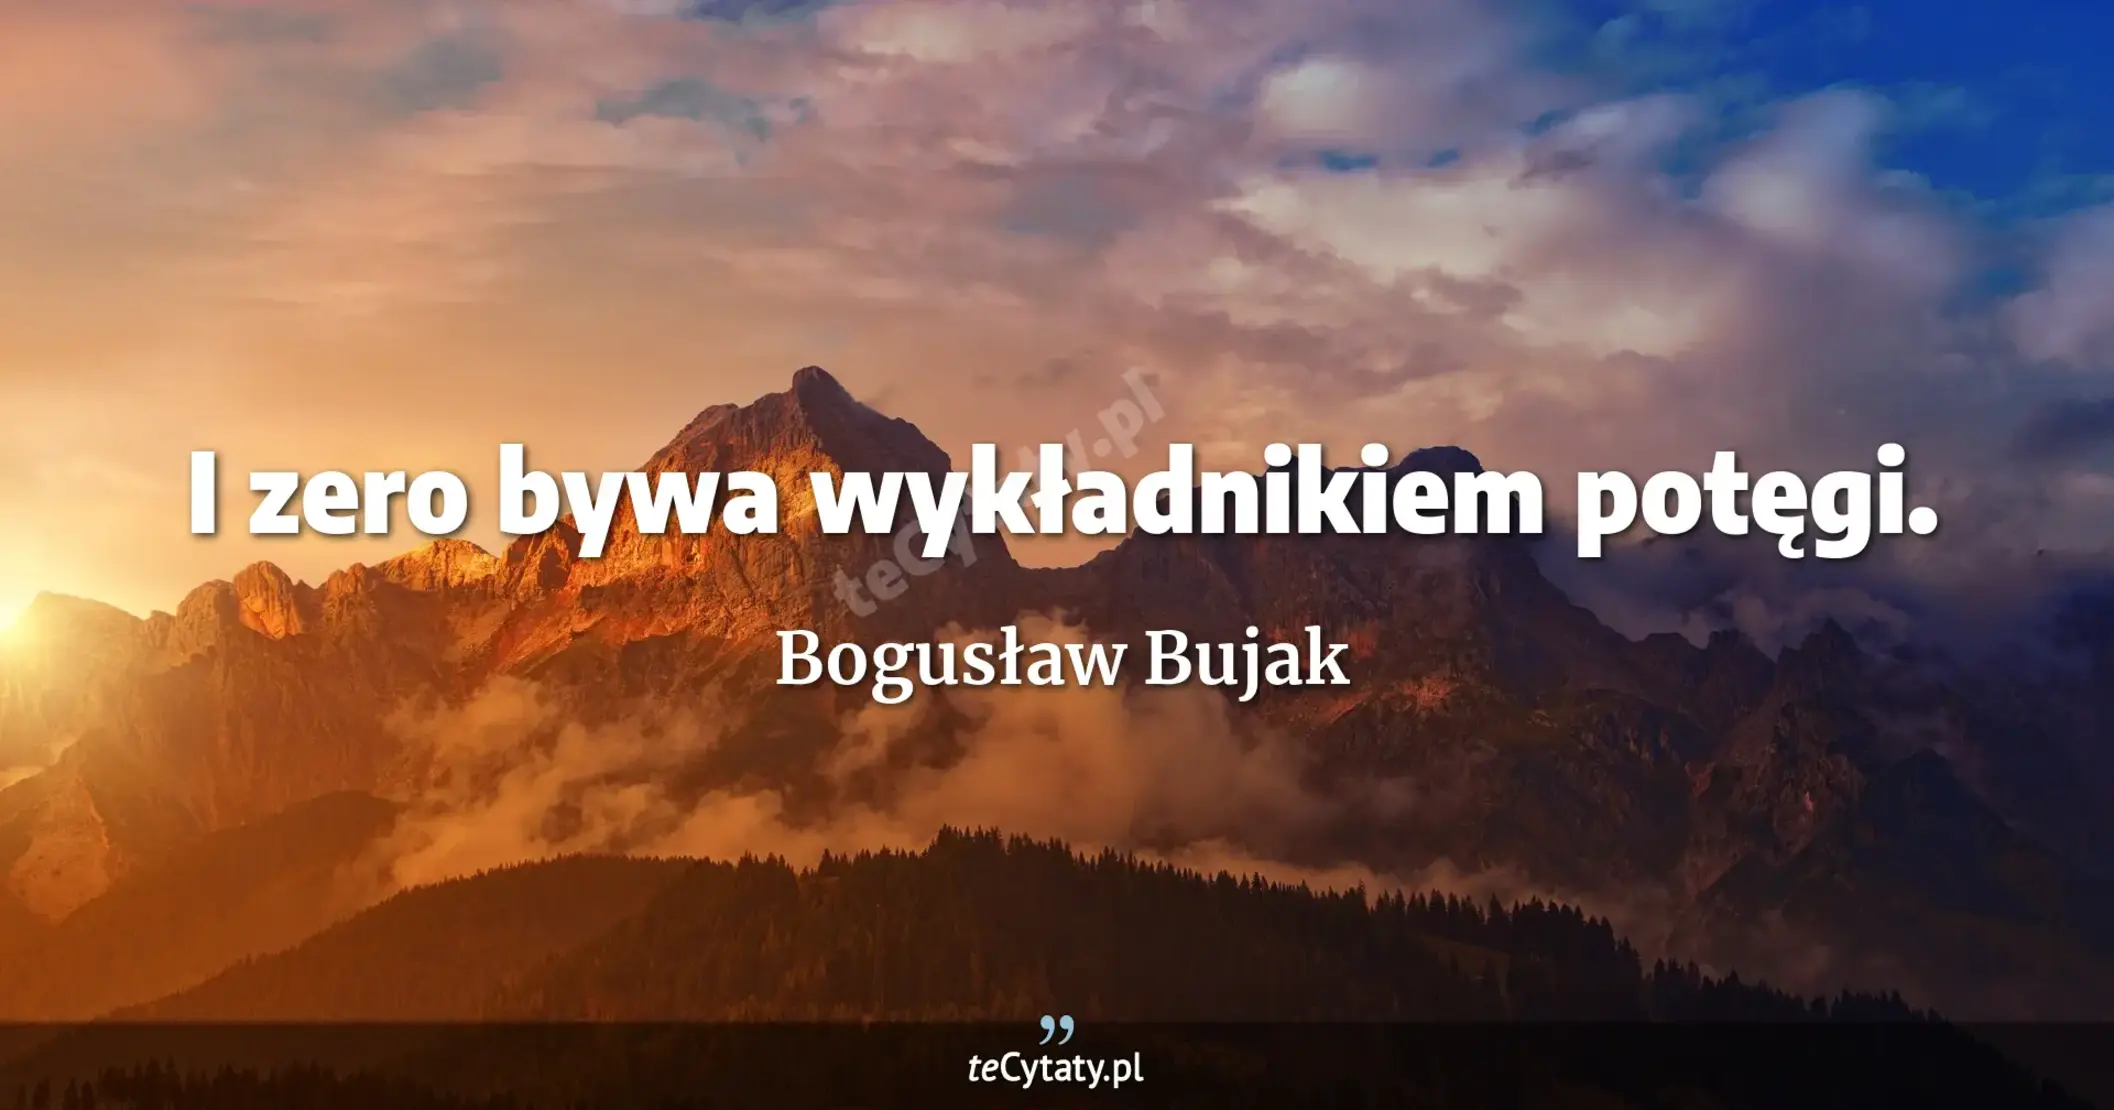 I zero bywa wykładnikiem potęgi. - Bogusław Bujak